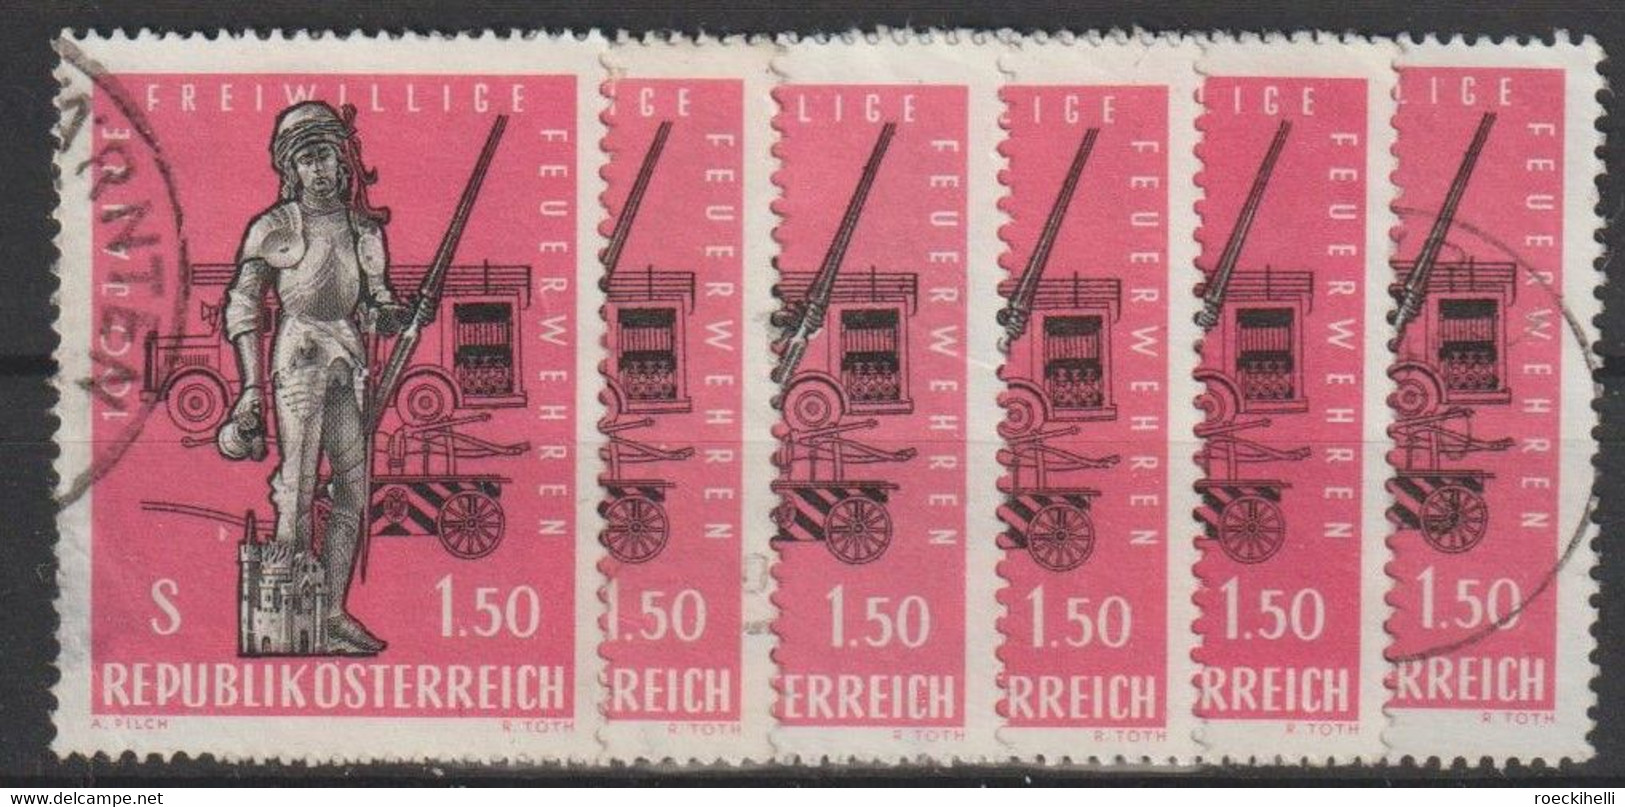 1963  -  ÖSTERREICH - SM "100 Jahre Freiwillige Feuerwehren" S 1,50 dkl'rosa - o gestempelt -  s.Scan (1161o 06- 28  at)